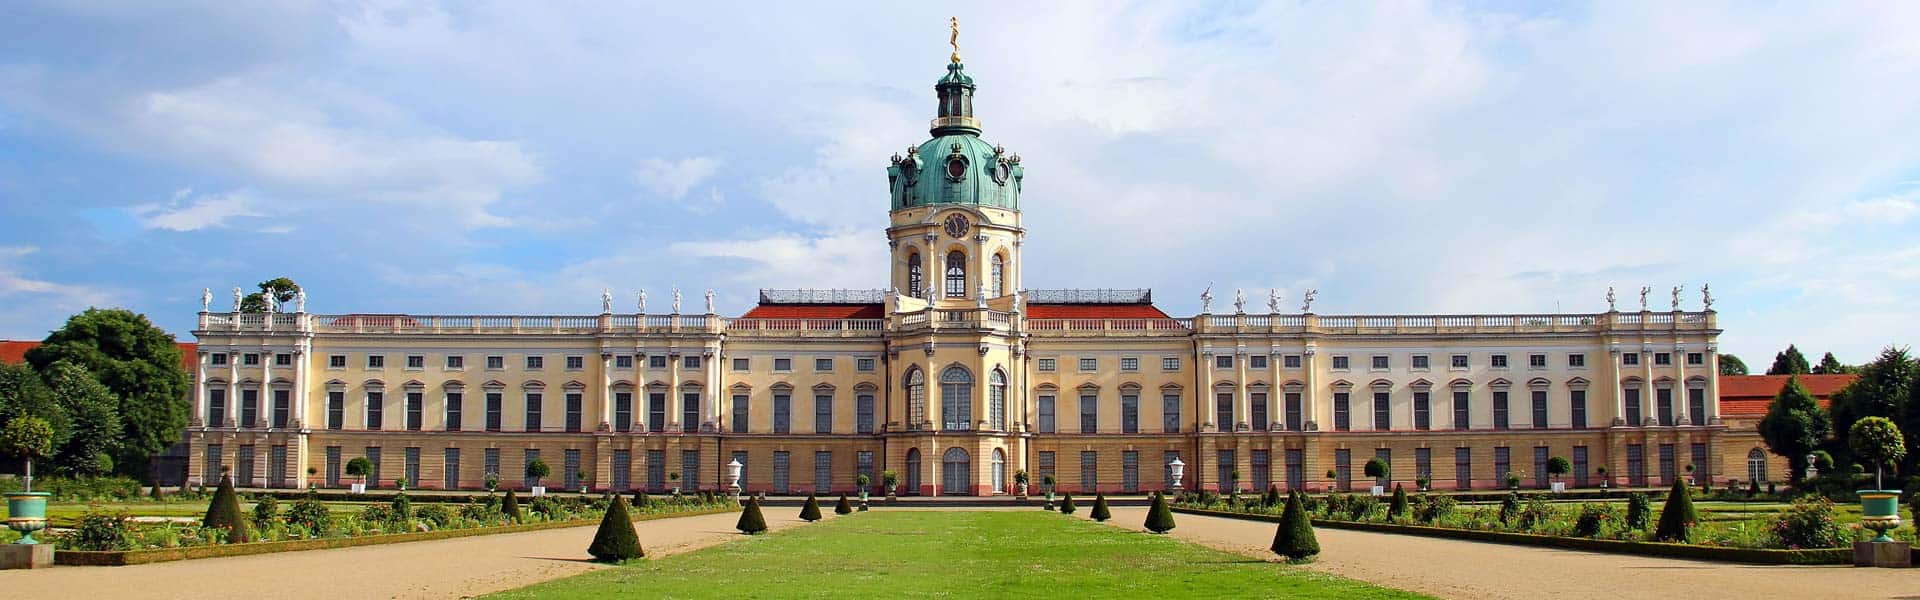 Besuchen Sie das wunderschöne Schloss Charlottenburg in Berlin